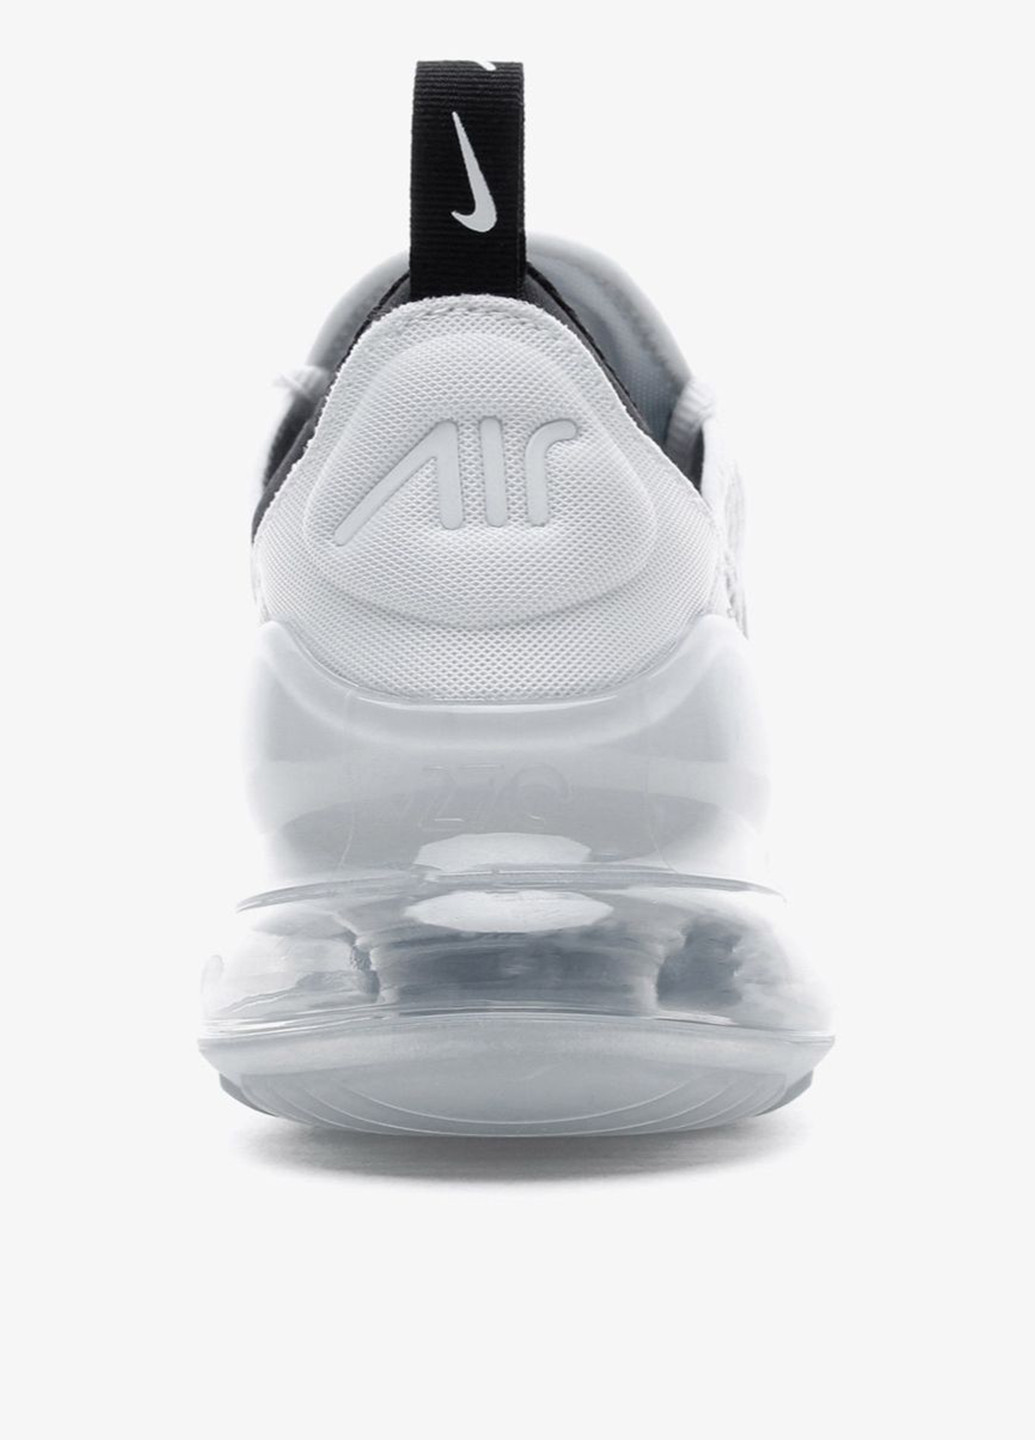 Белые демисезонные кроссовки Nike AIR MAX 270